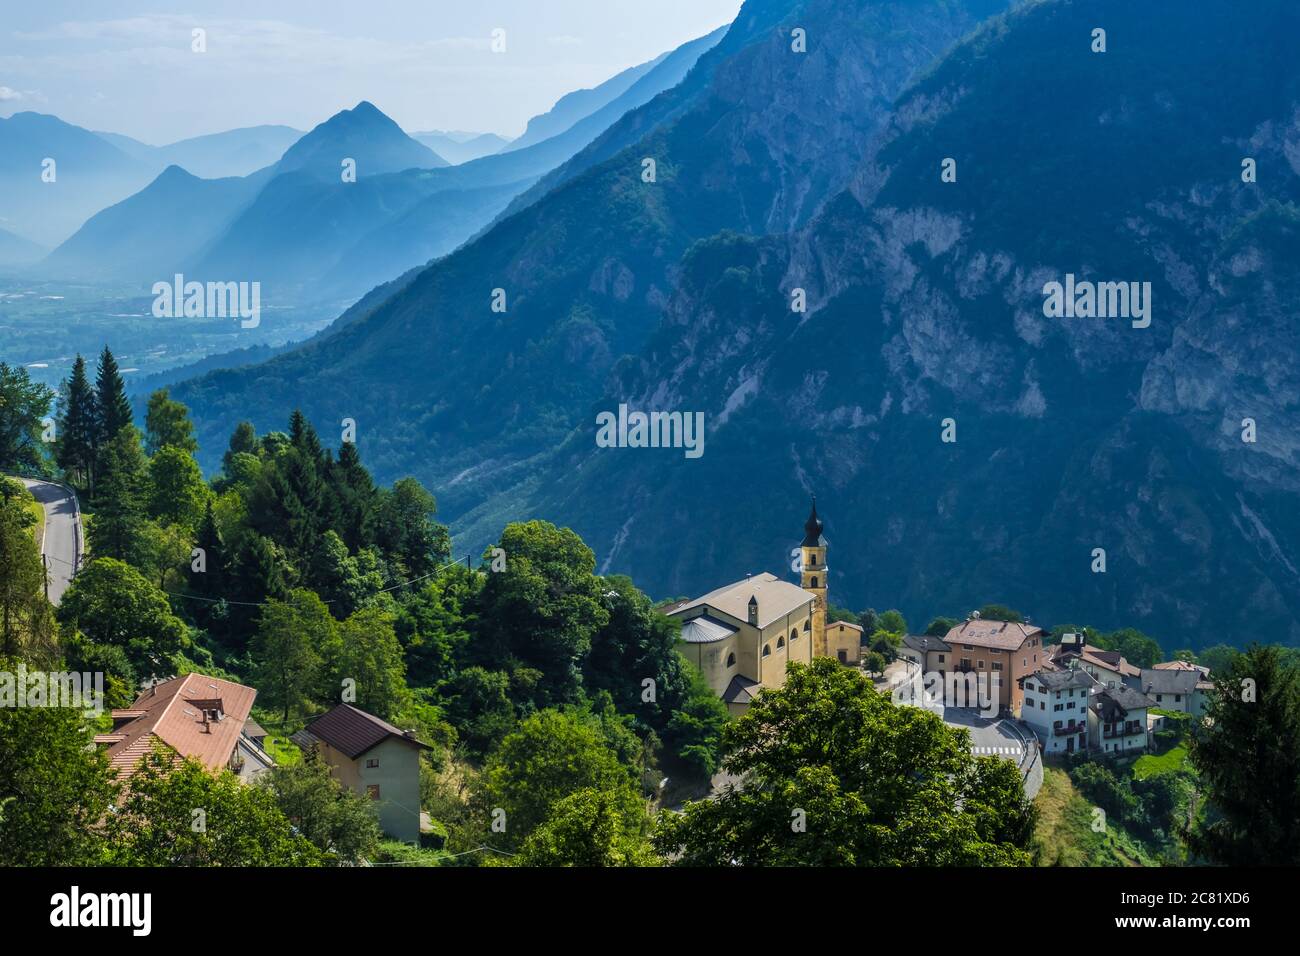 Pergine Valsugana, Italien - 12. August 2019: Dorf unter den Bergen und kleine Stadt im valle di Italian Alps, Trentino Alto Adige, Provinz Trient Stockfoto